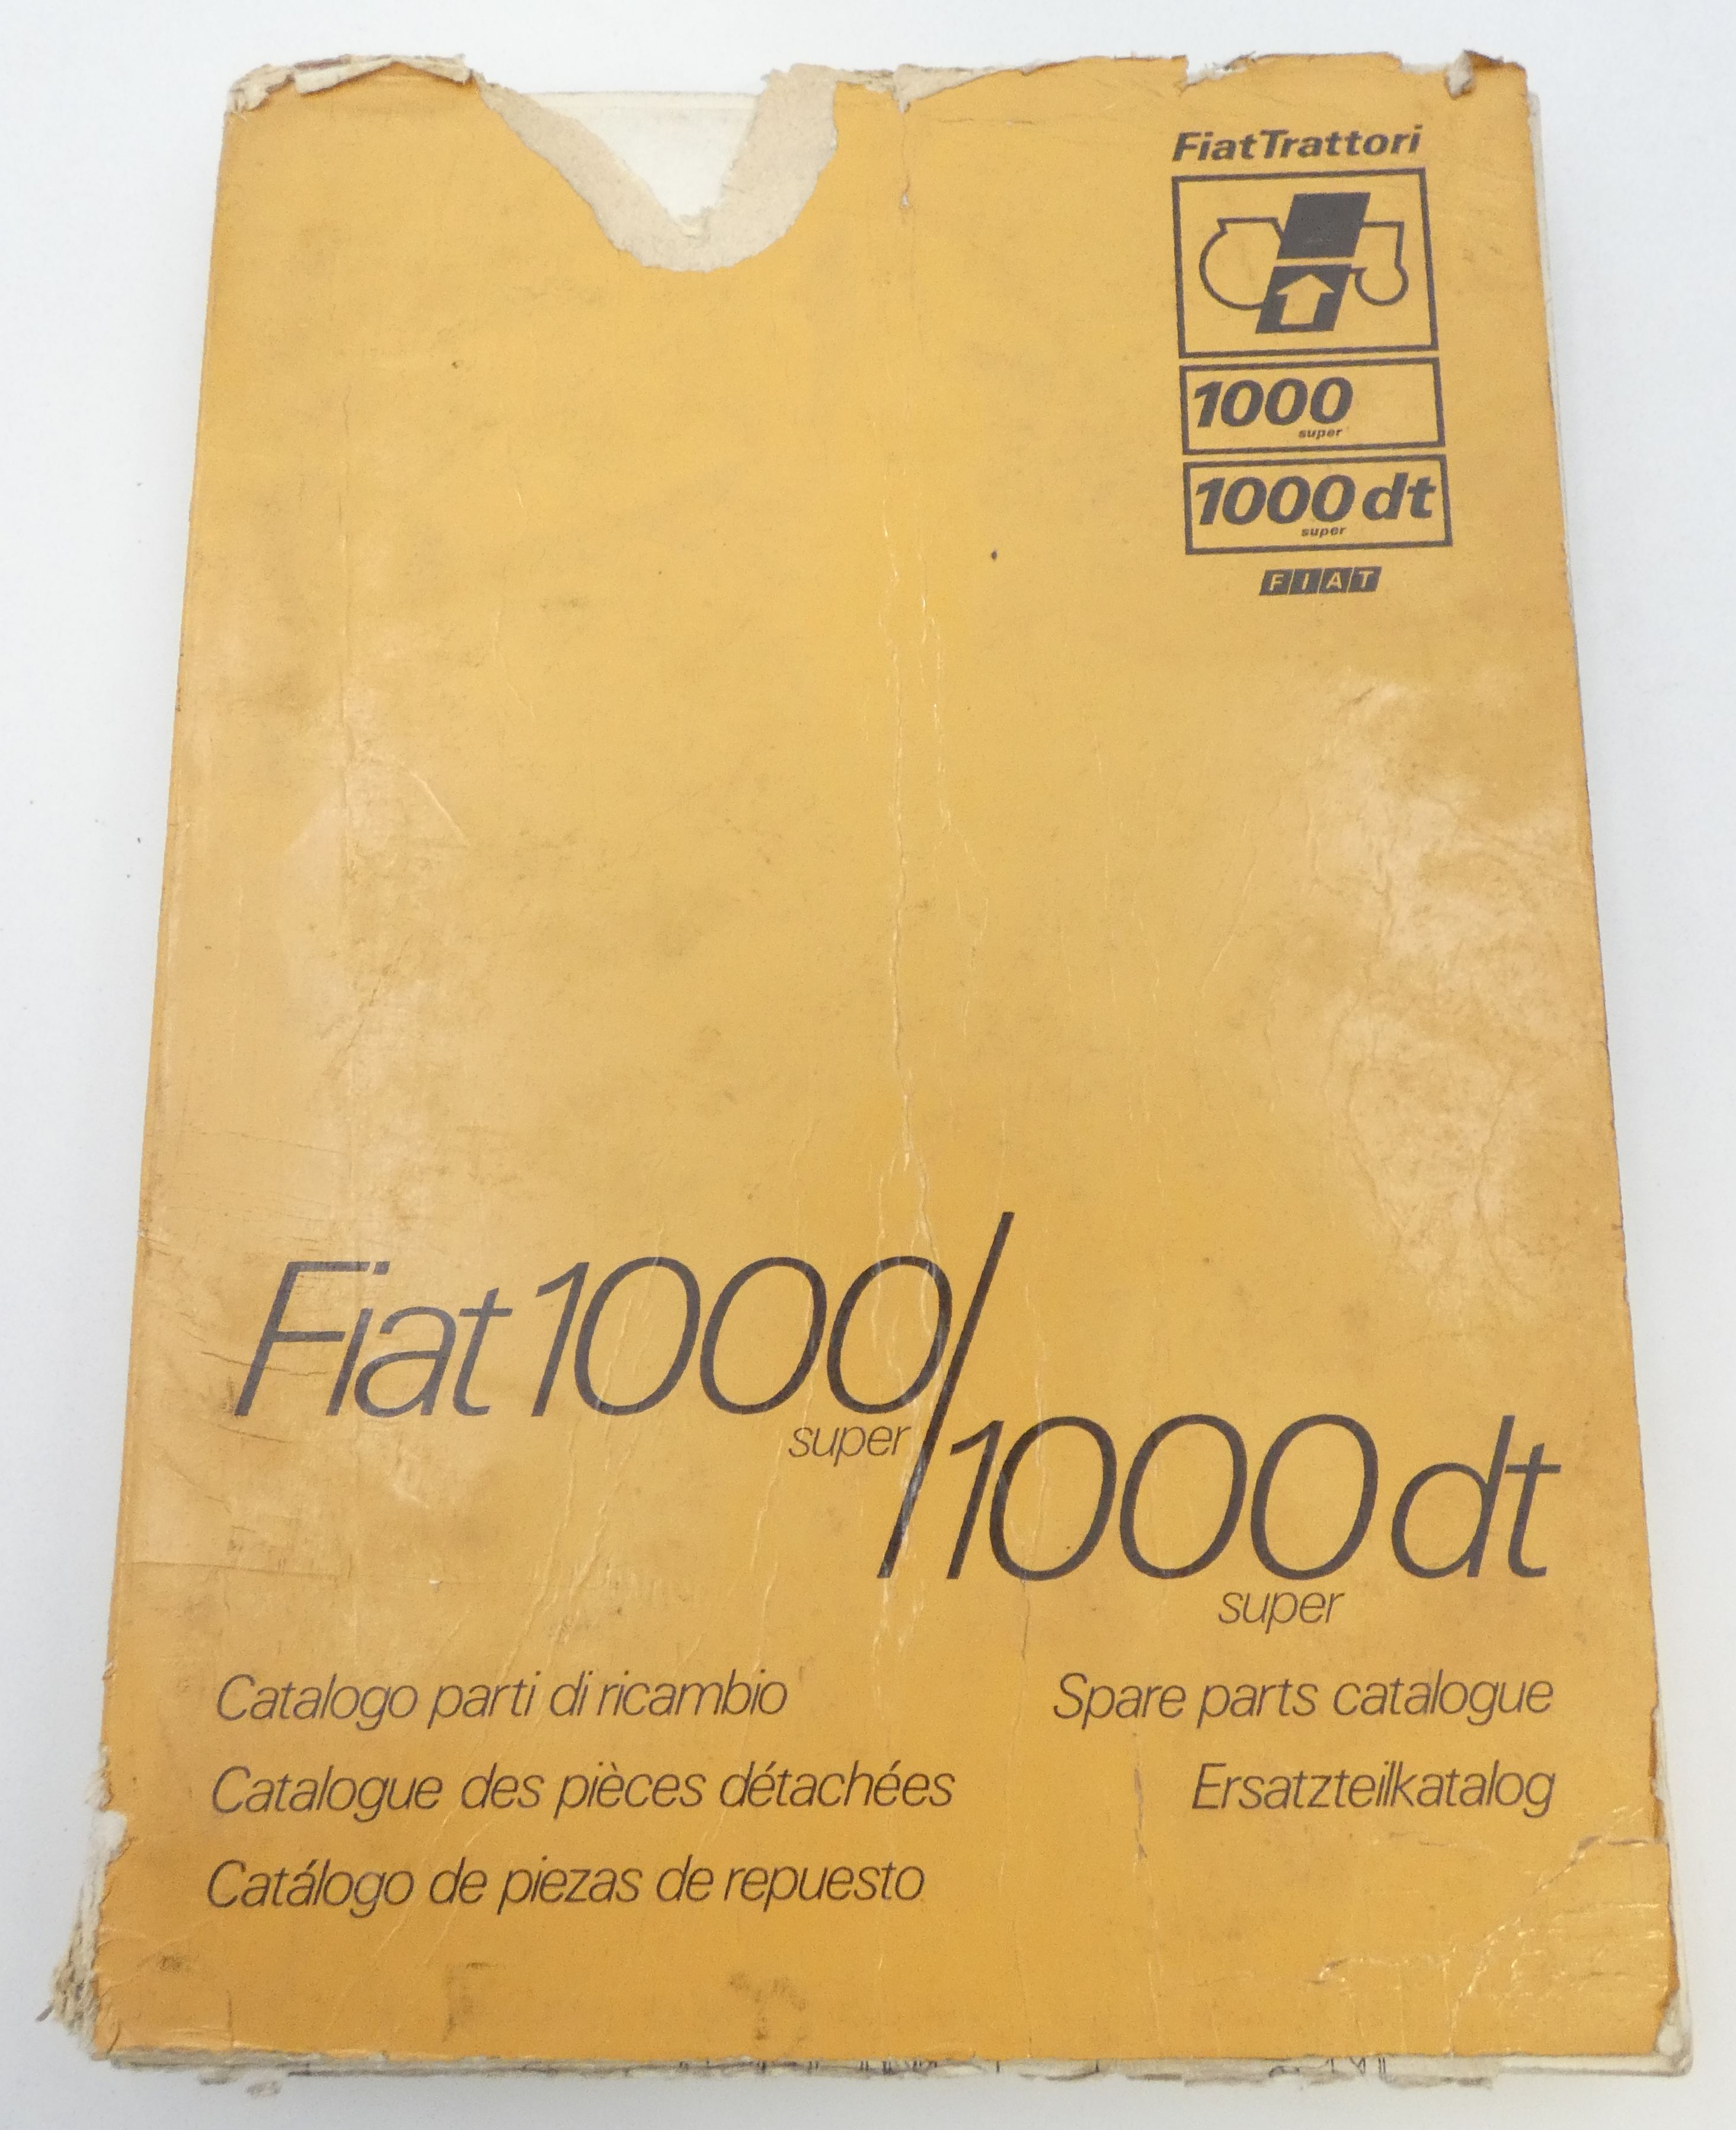 Fiat 1000 Super/1000dt Super spare parts catalogue